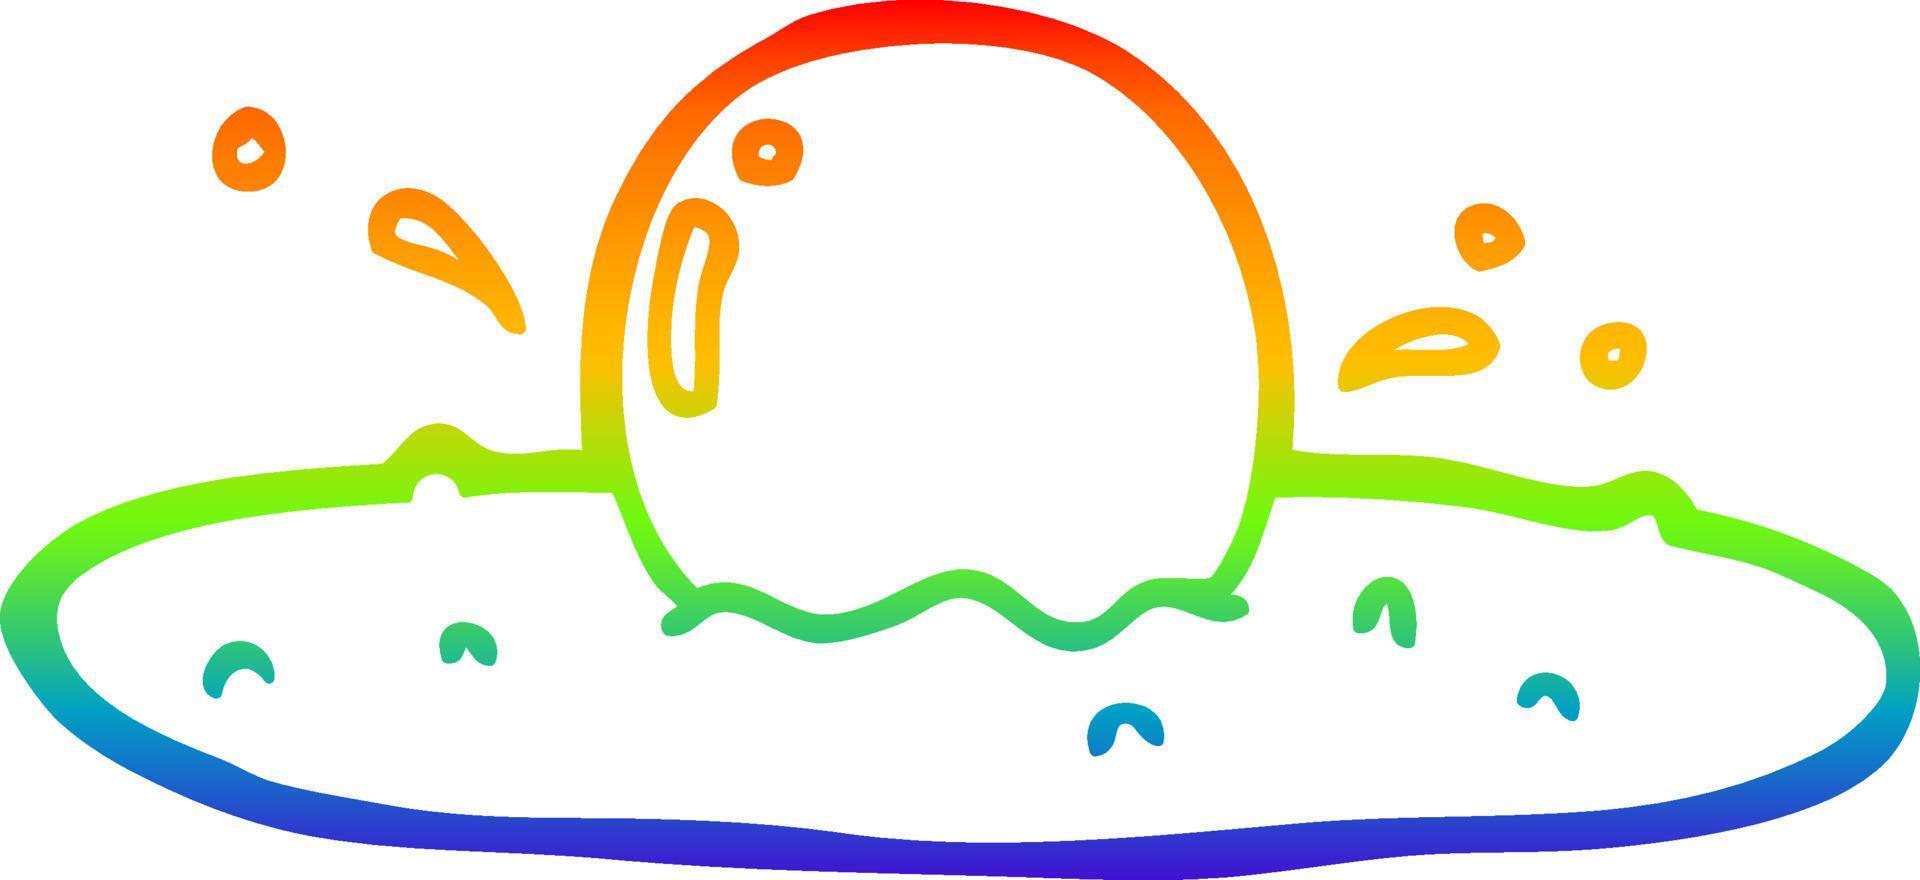 uovo fritto del fumetto di disegno a tratteggio sfumato arcobaleno vettore